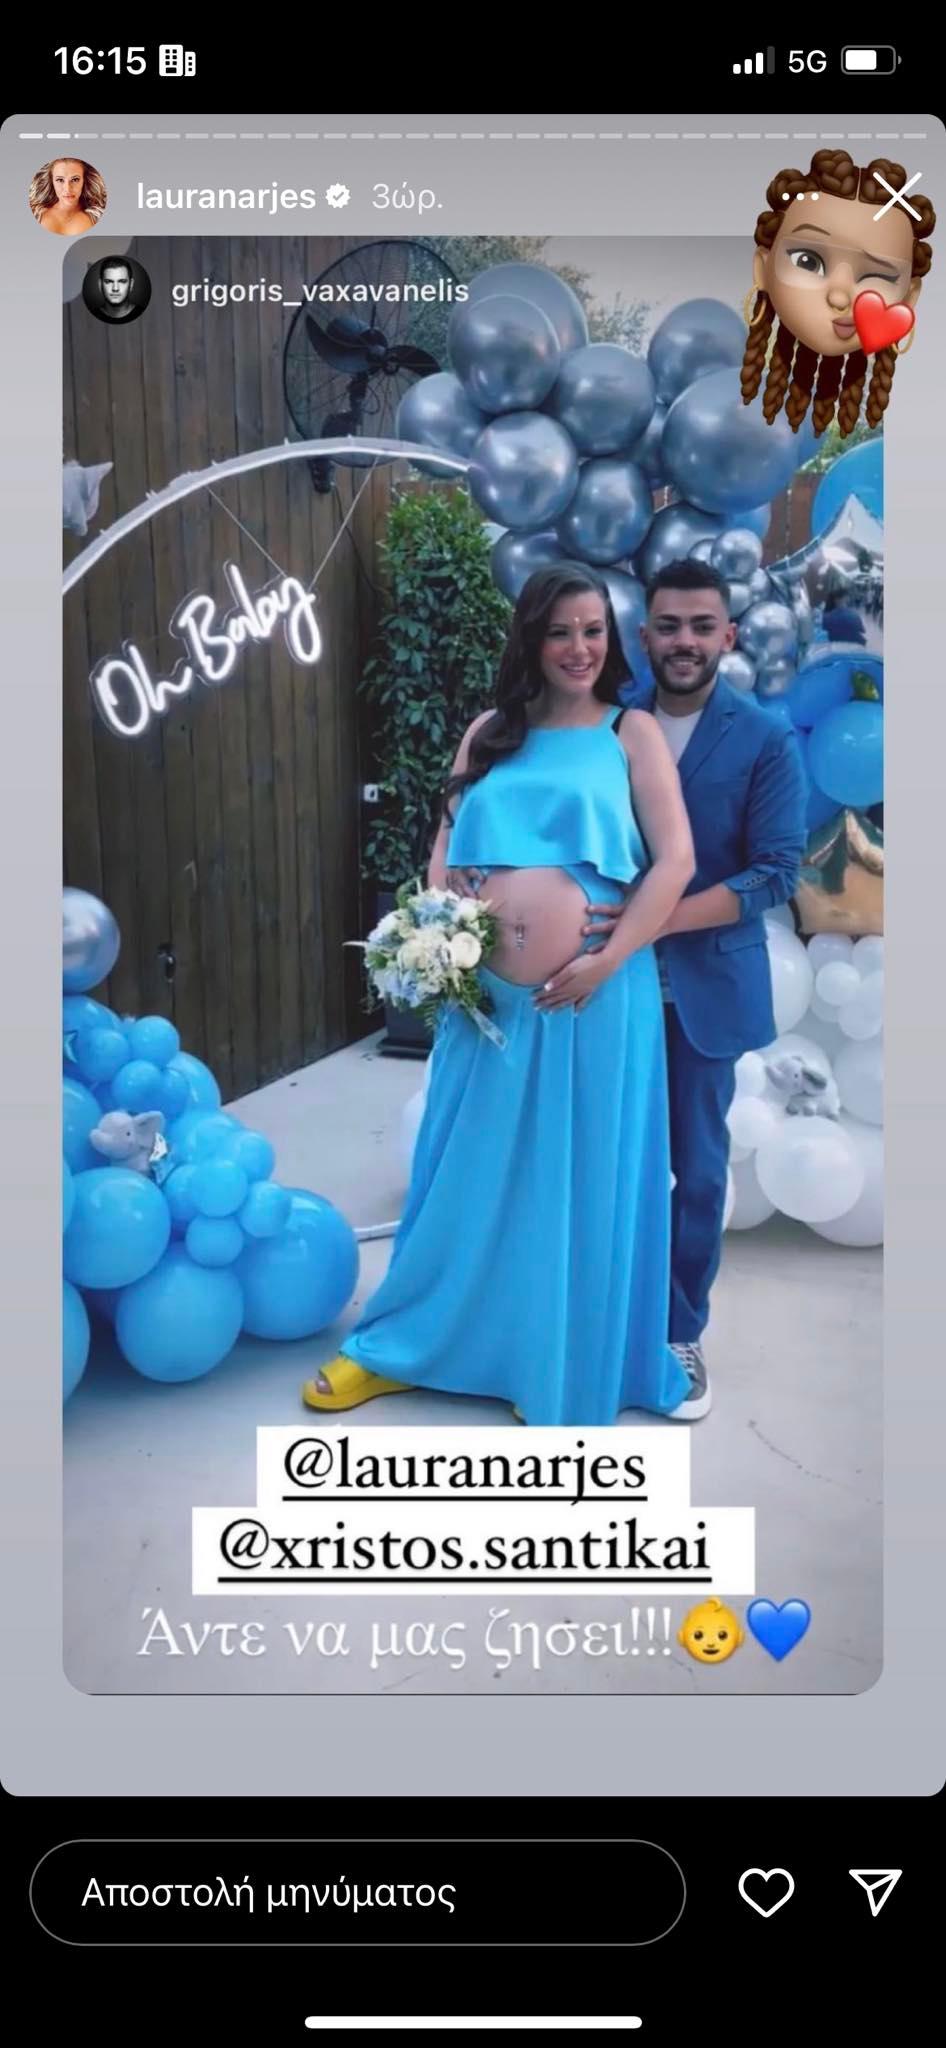 Λάουρα Νάργες - Χρήστος Σαντικάι παντρεύτηκαν με σύμφωνο συμβίωσης και διοργάνωσαν baby shower για το αγοράκι που περιμένουν.